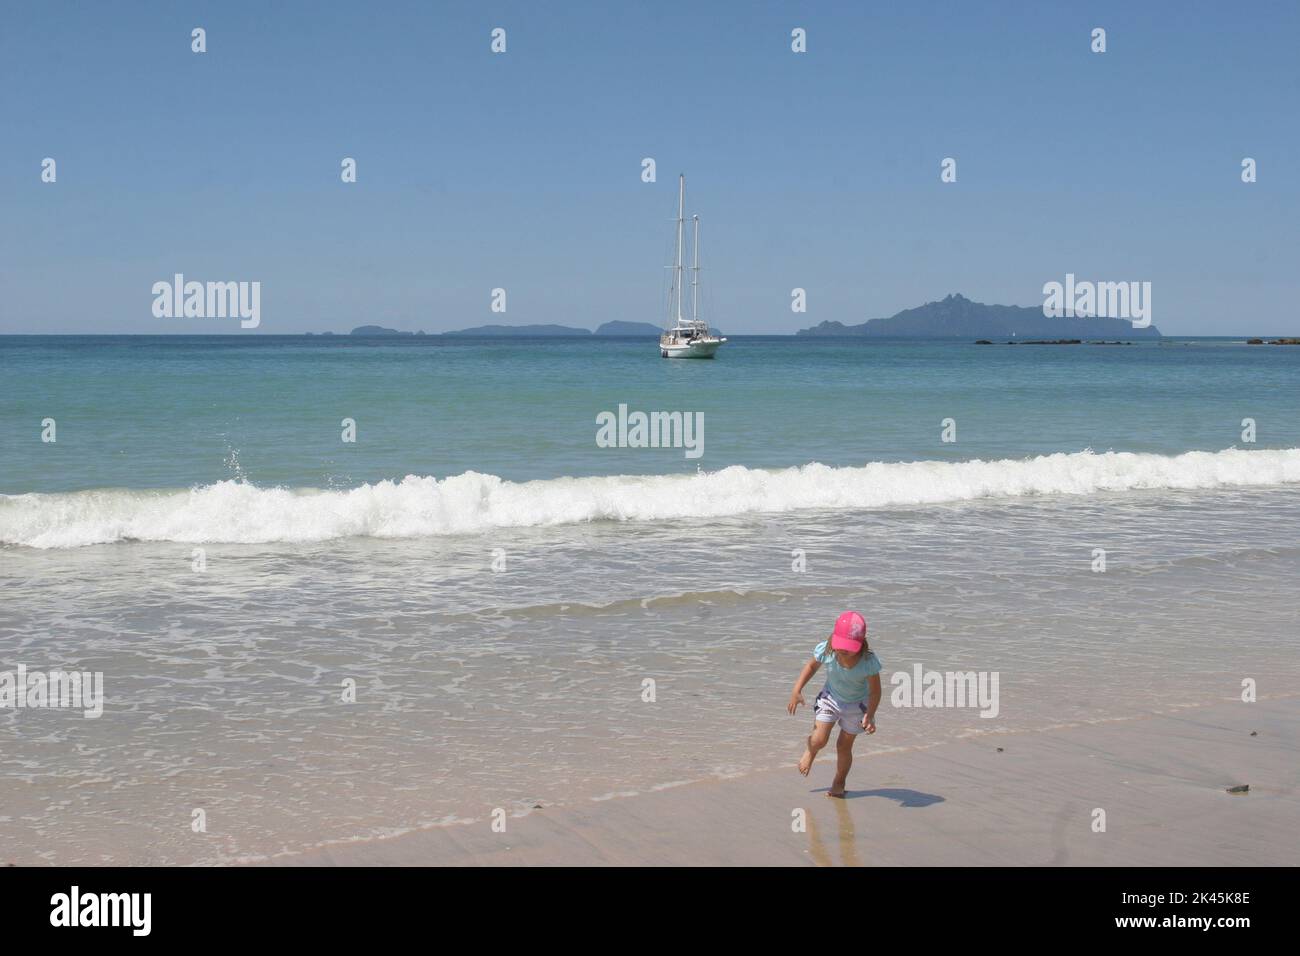 NEW ZEELAND un enfant joue sur l'une des plages de l'île du nord où un voilier est à l'ancre Banque D'Images